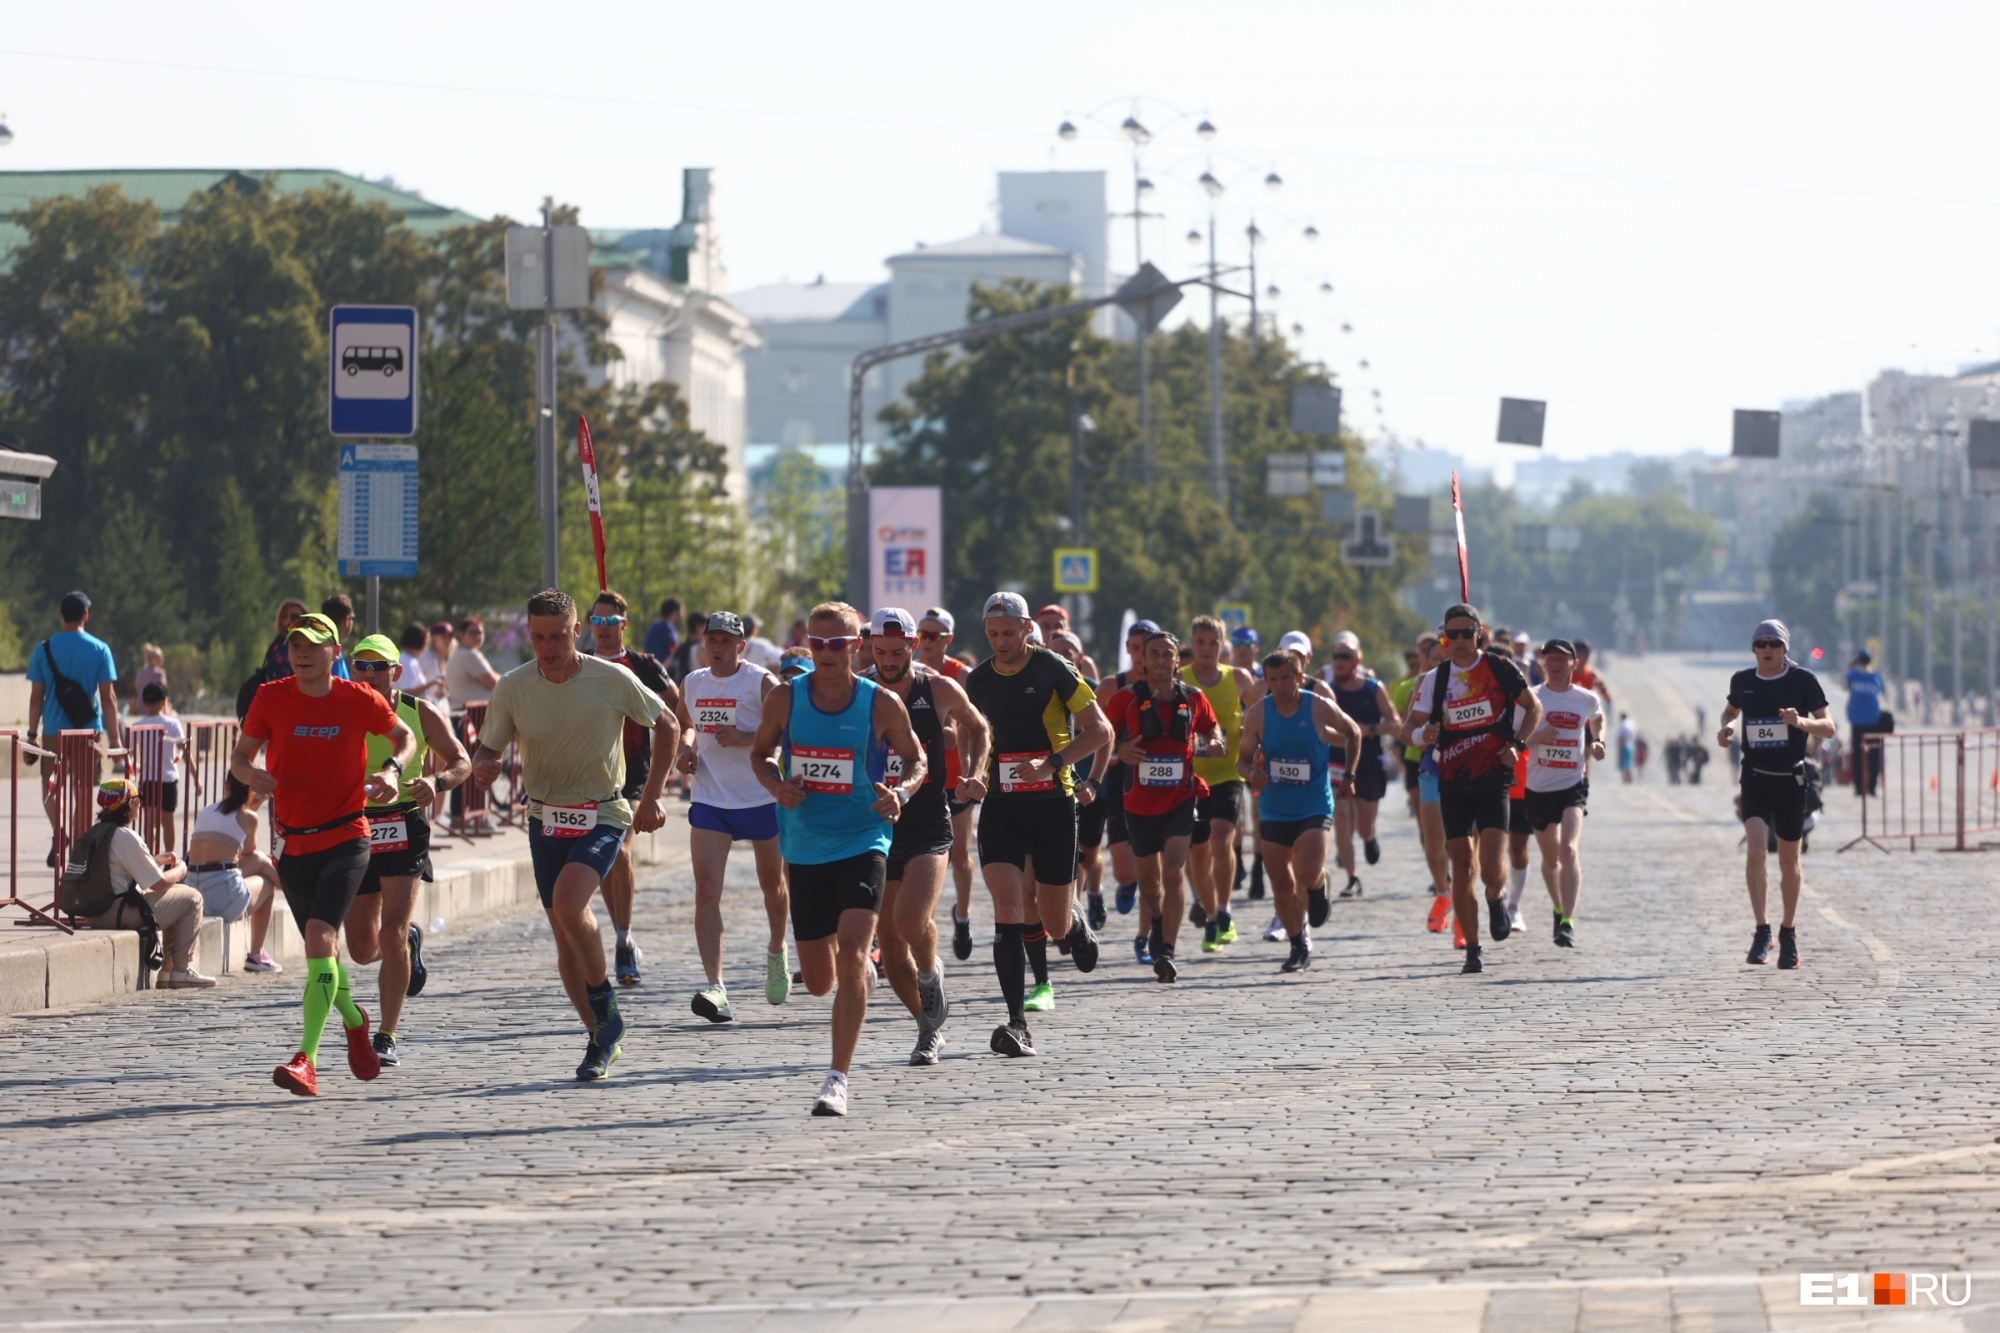 Тысячи бегунов под палящим солнцем: показываем фоторепортаж с масштабного марафона «Европа — Азия»